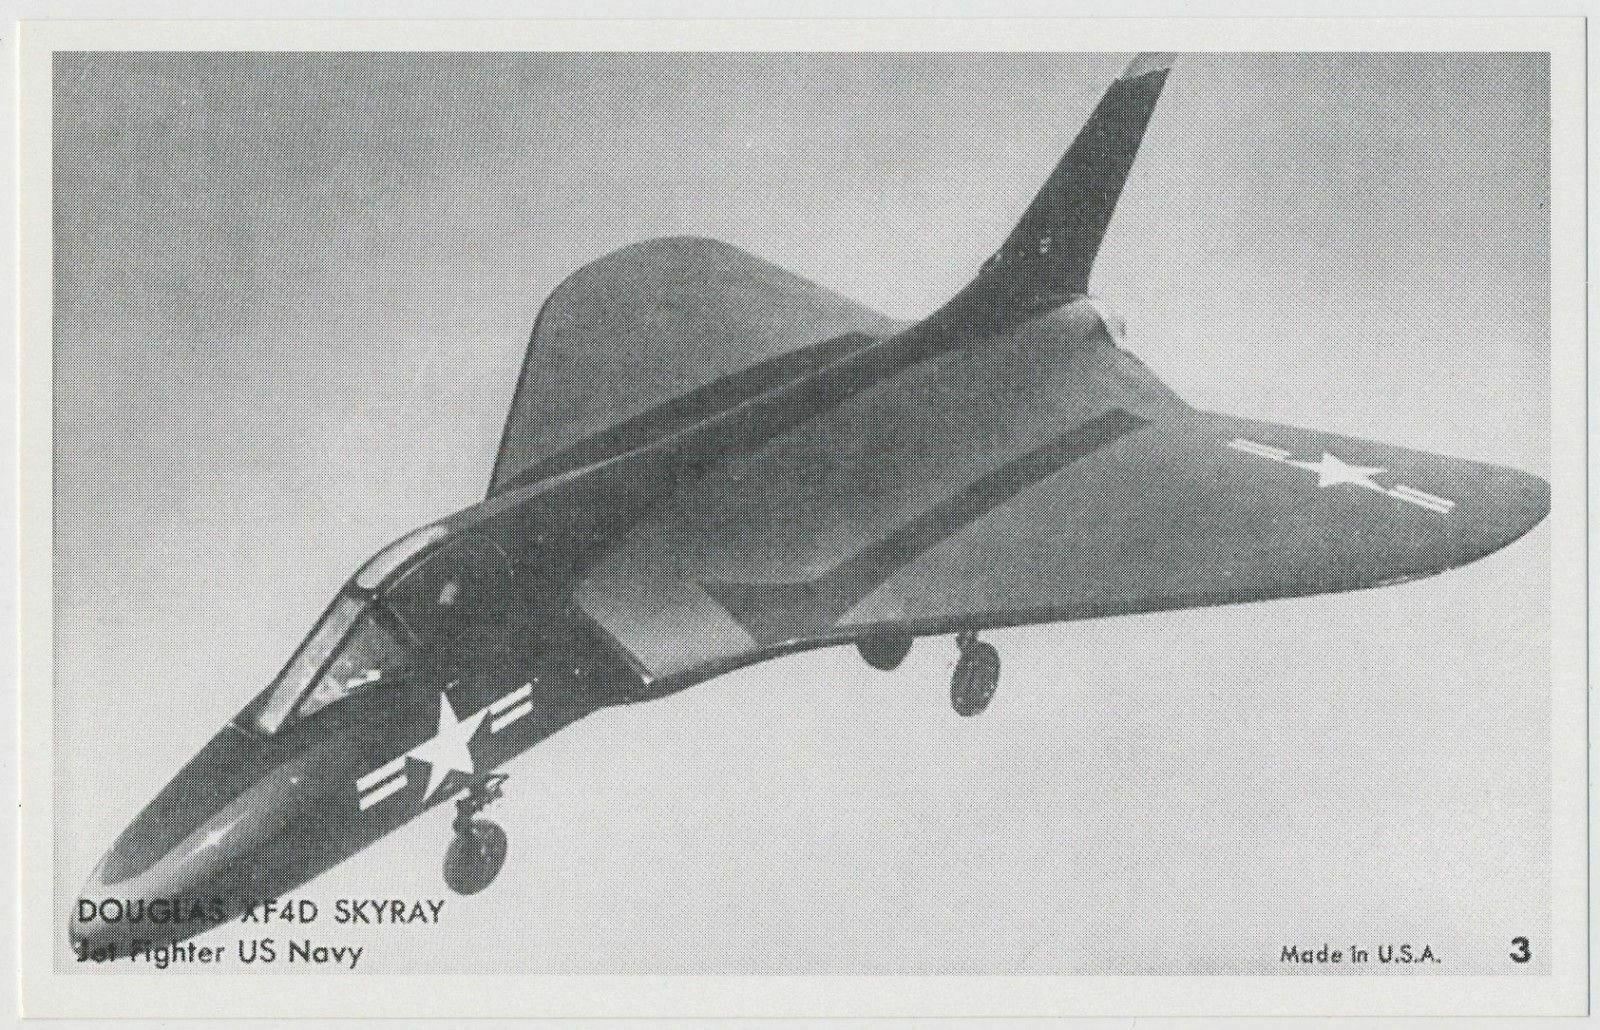 Douglas XF4D Skyray Jet Fighter, US Navy